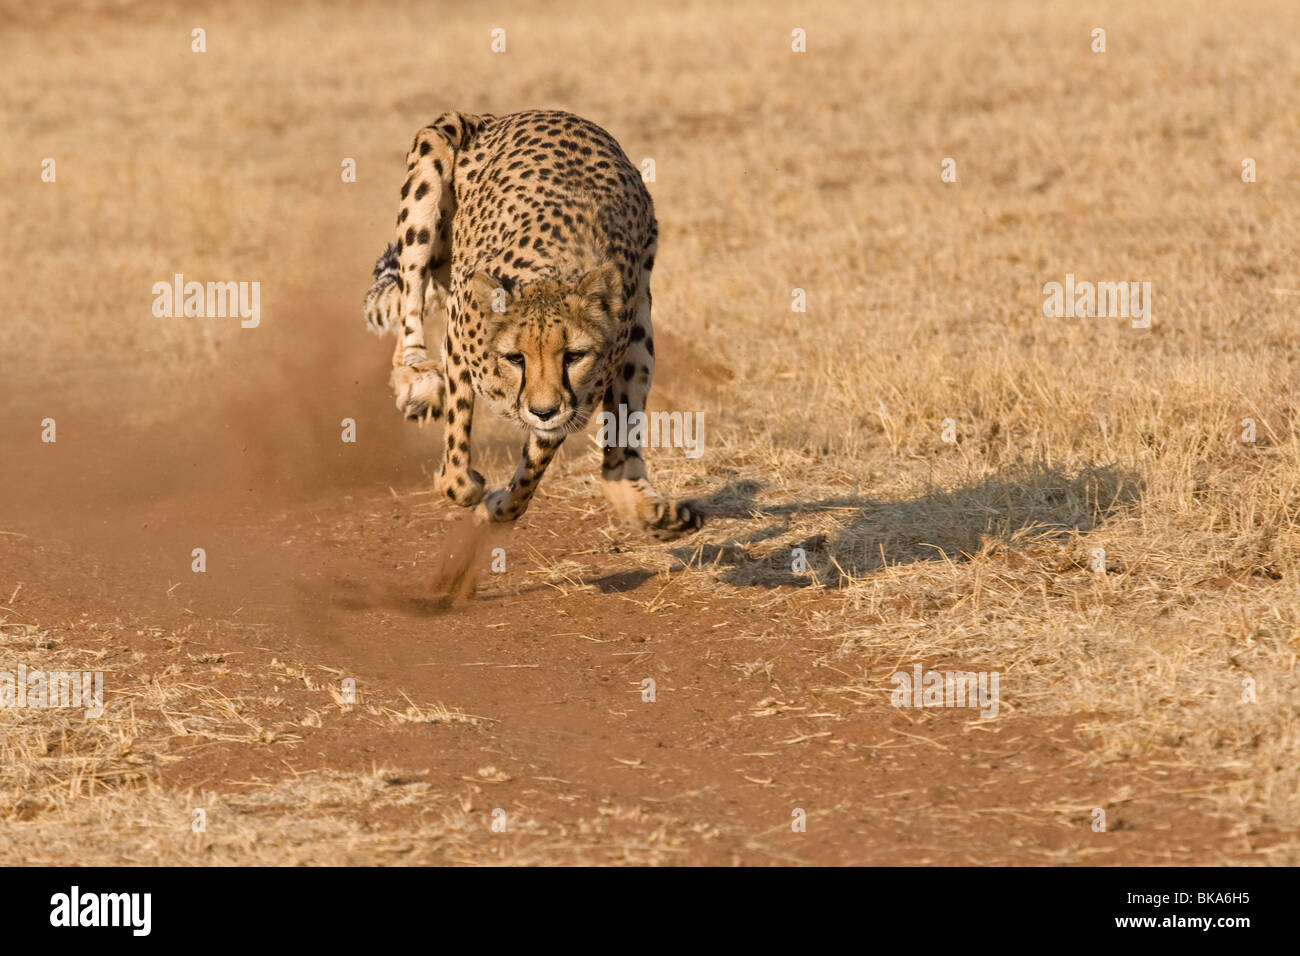 Running Cheetah (Acinonyx jubatus) Stock Photo